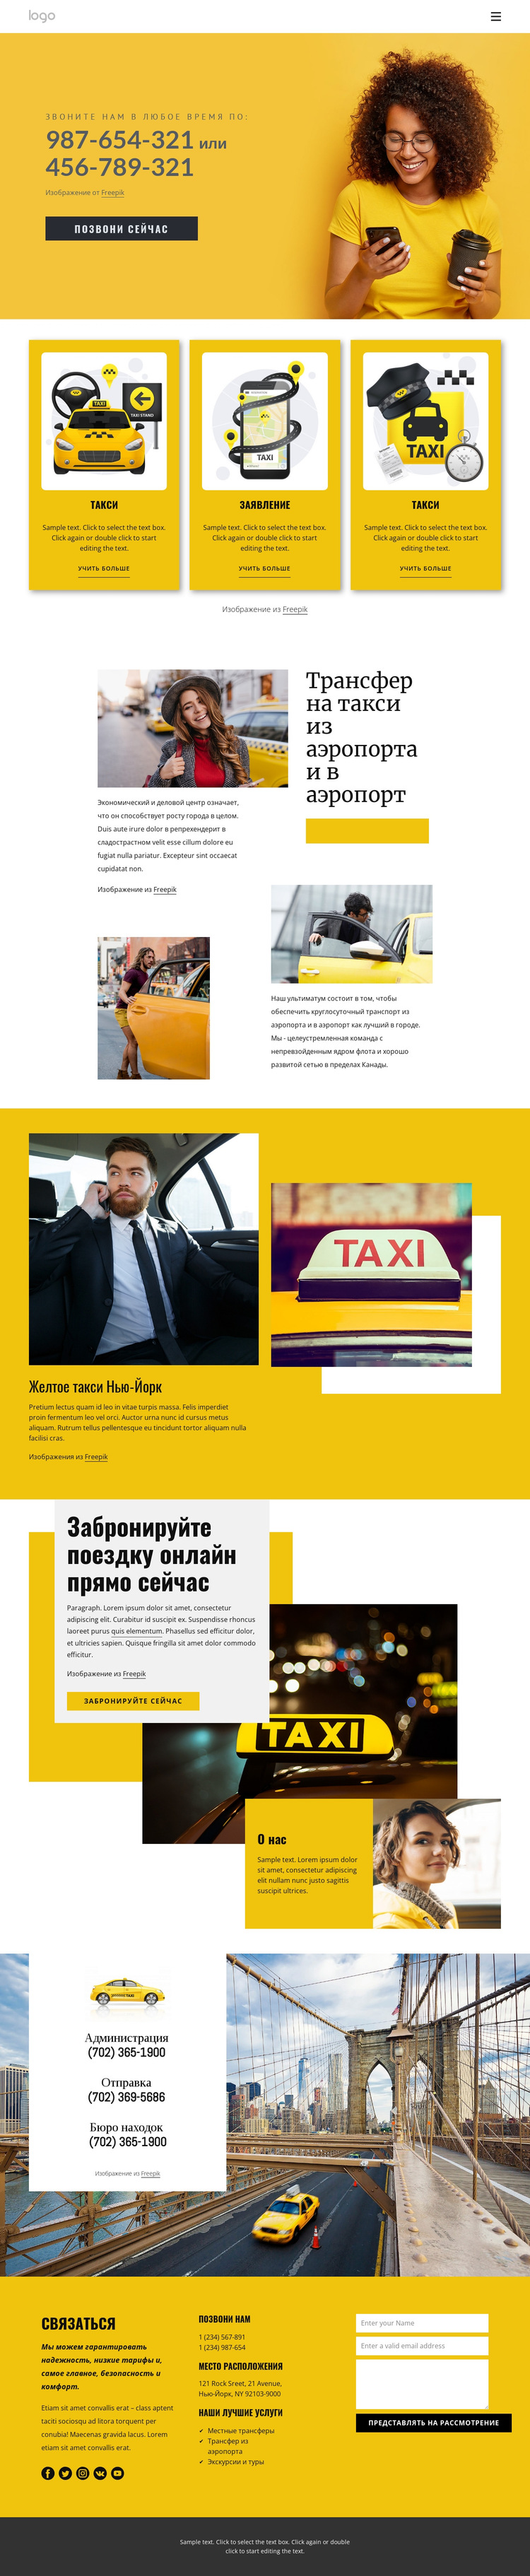 Качественное такси Шаблон веб-сайта